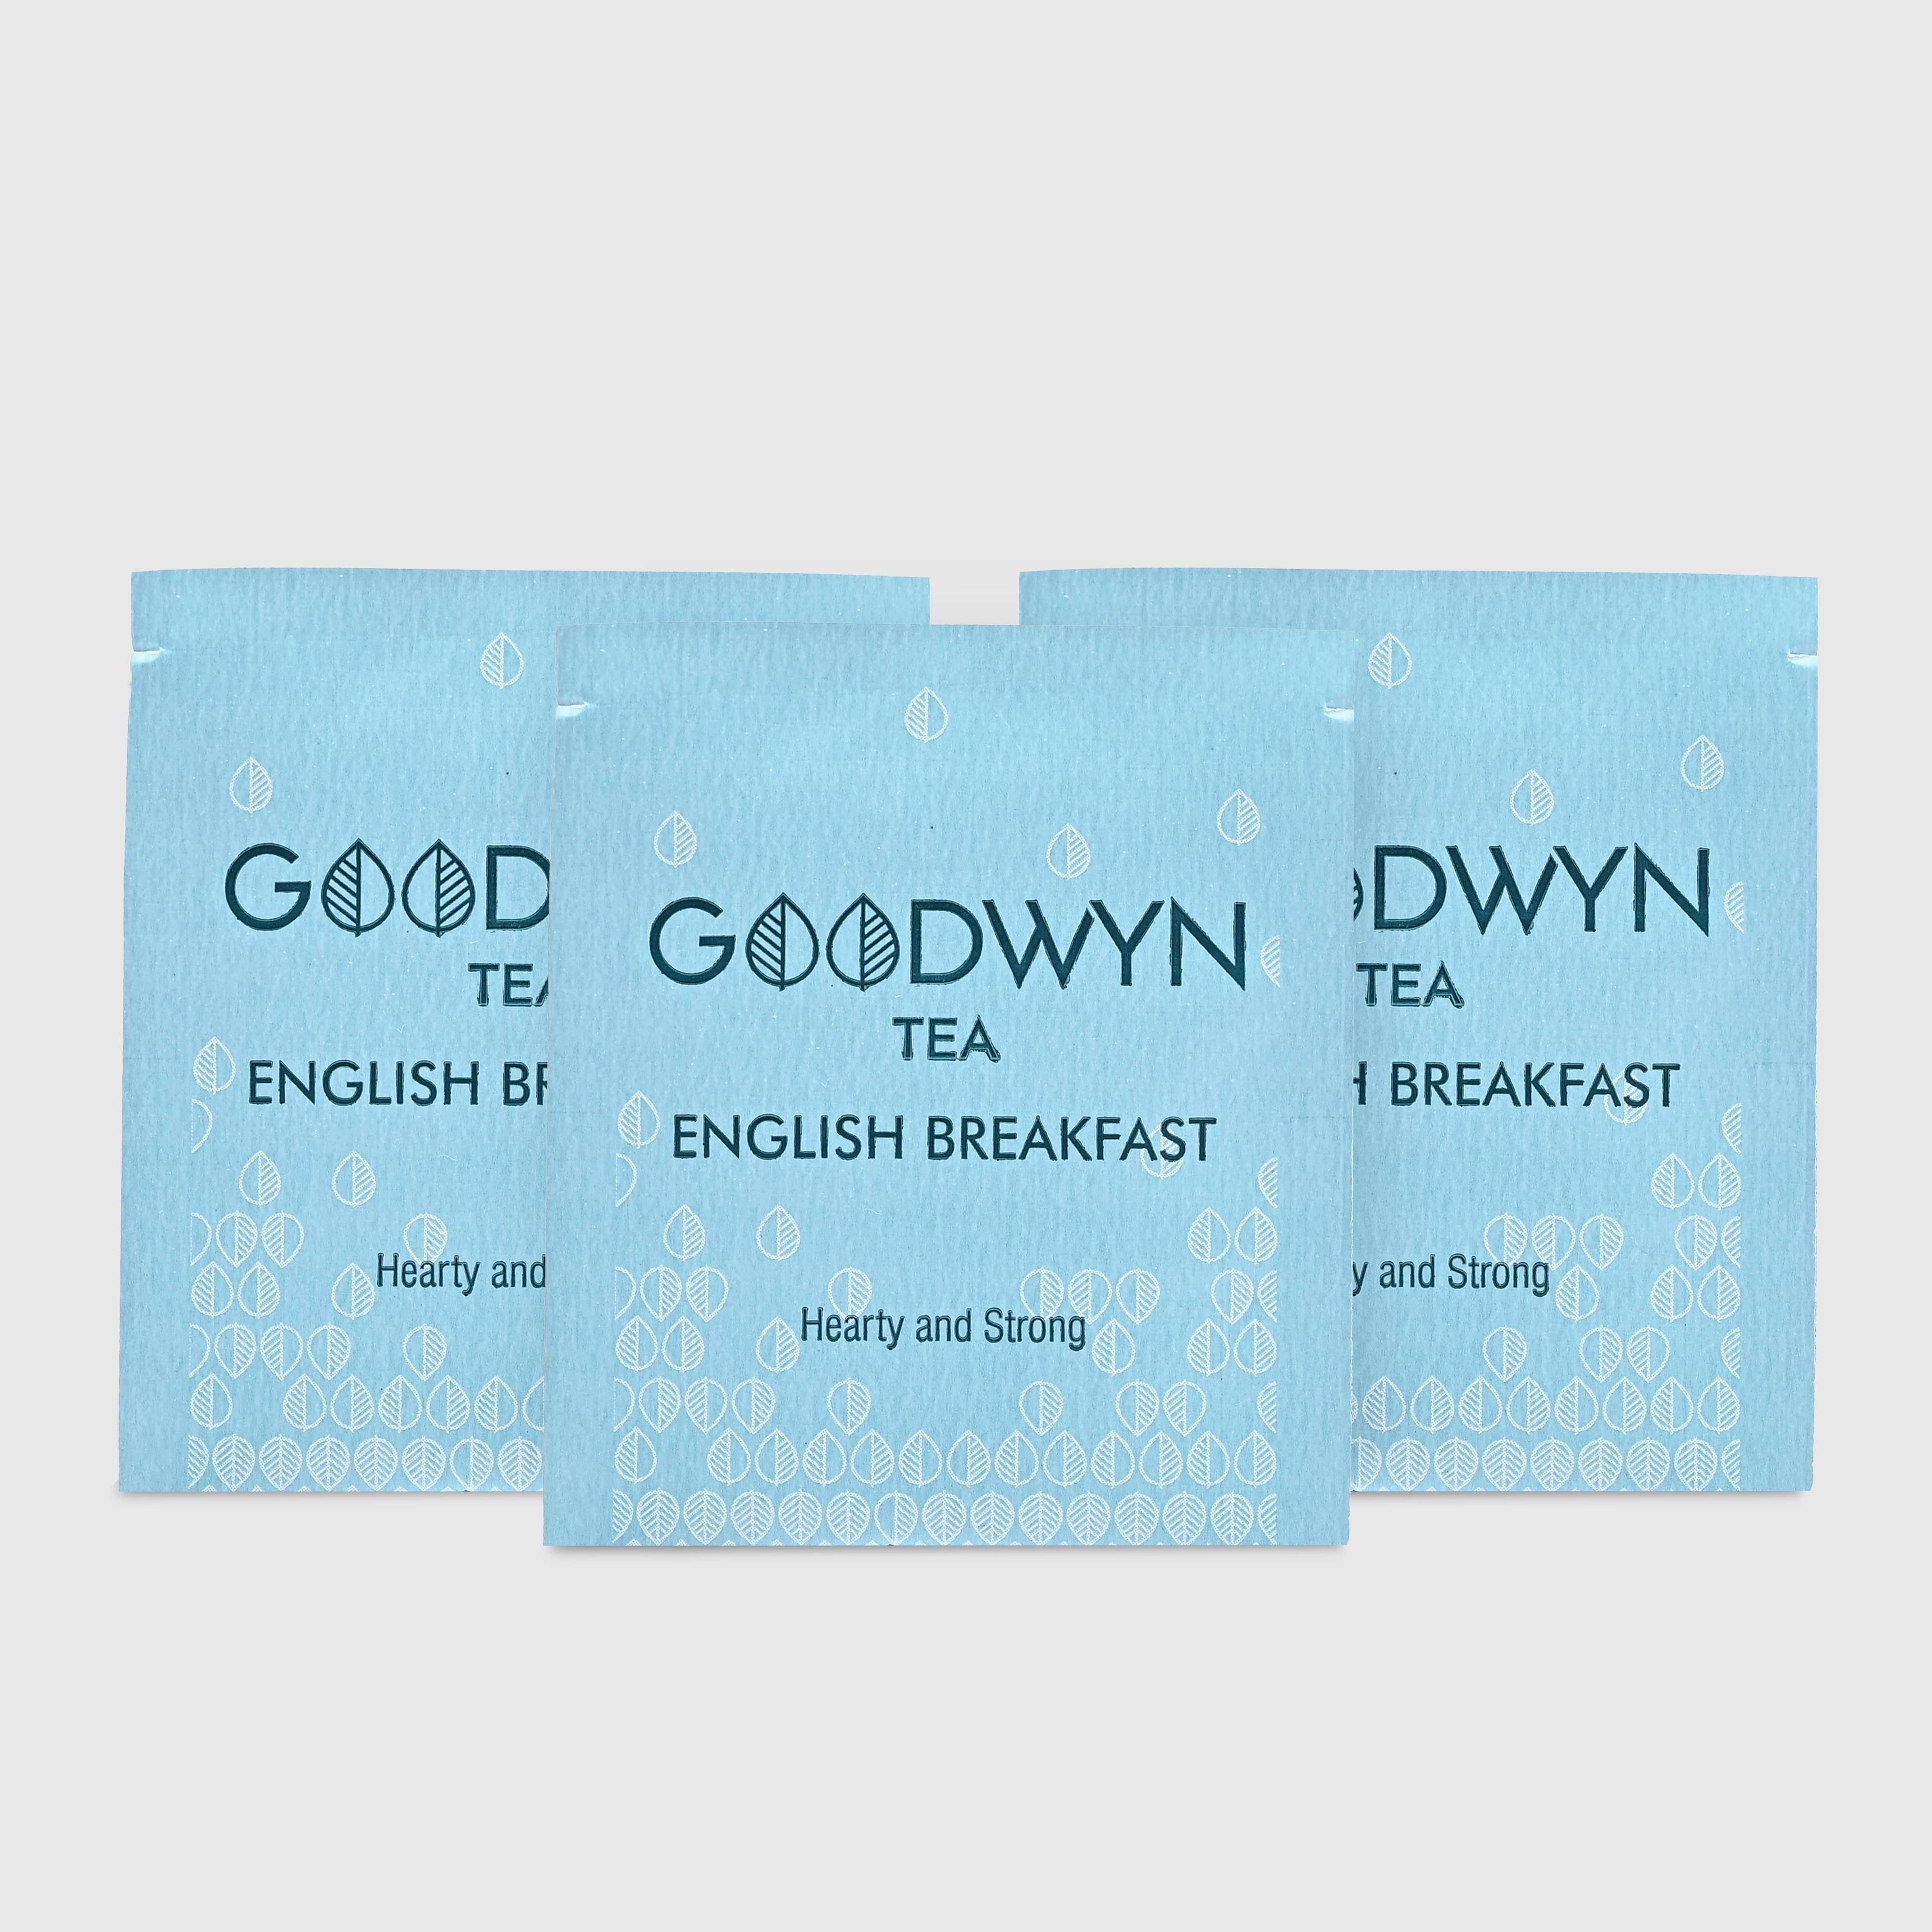 Goodwyn English Breakfast Enveloped Tea Bags 100s